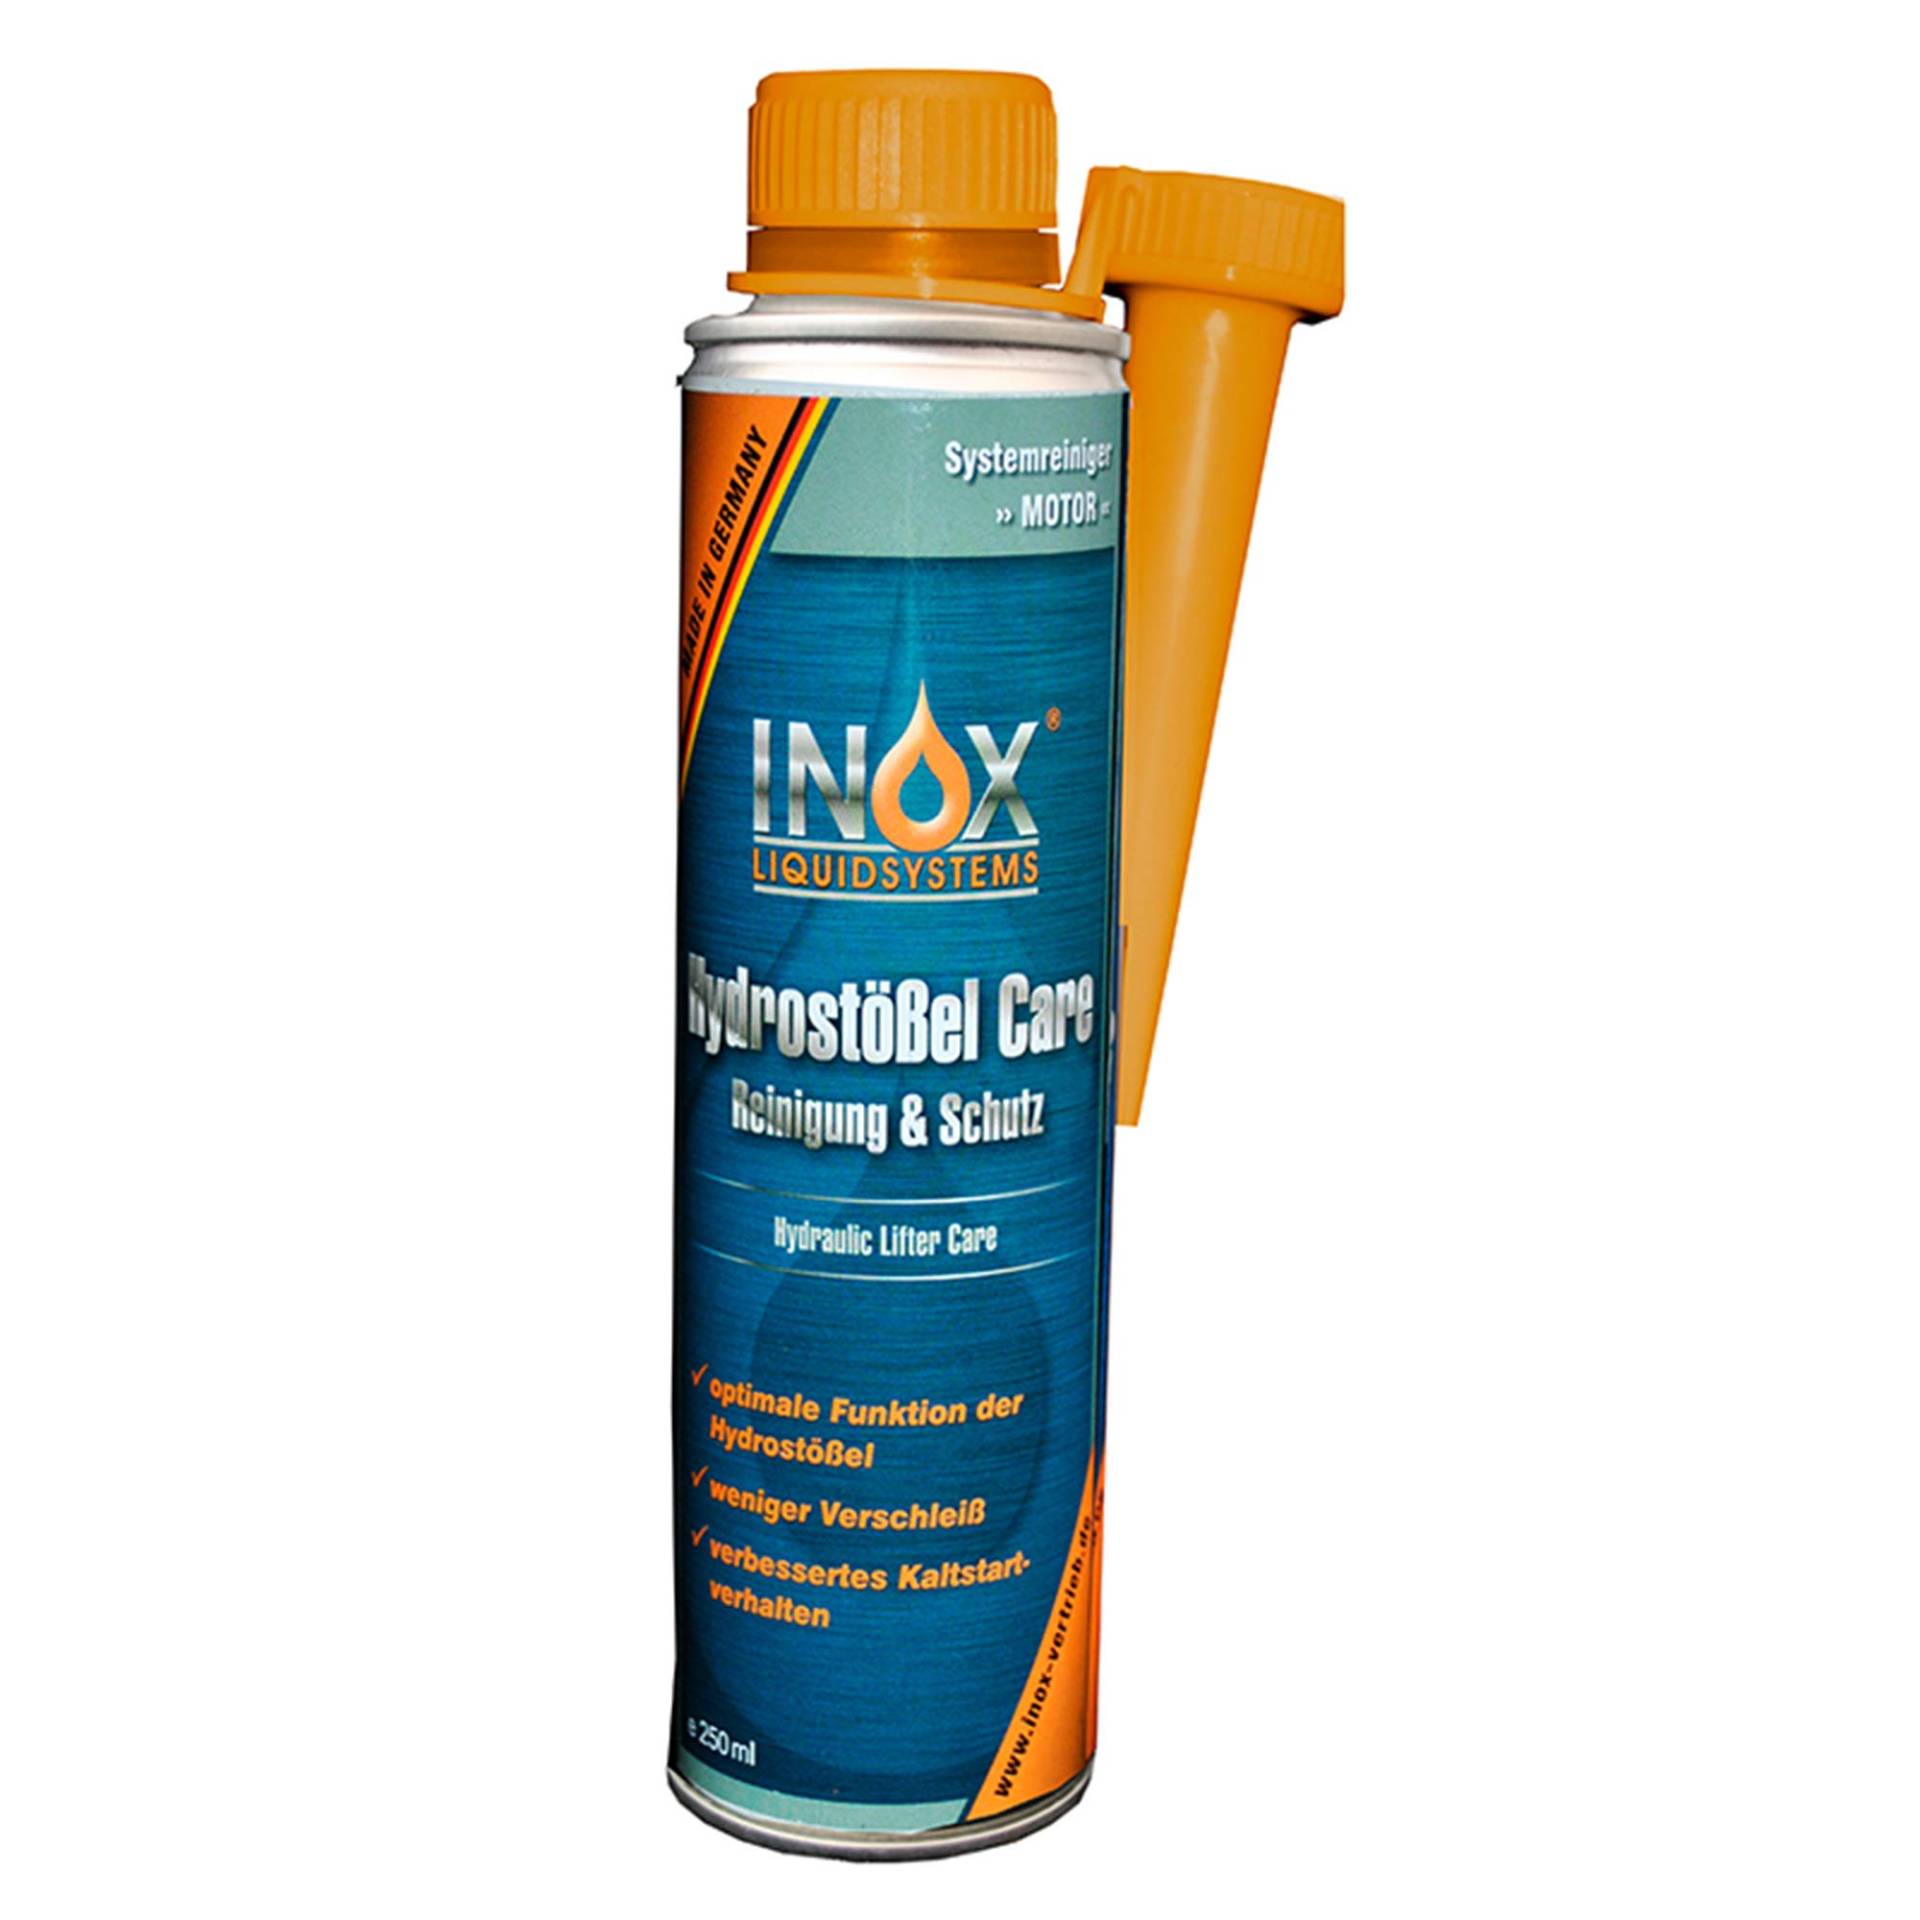 INOX® Hydrostößel Care Reinigung, 250ml - Reiniger & Schutz Additiv für alle Benzin- und Dieselmotoren, weniger Verschleiß und verbessertes Kaltstartverhalten von INOX-LIQUIDSYSTEMS